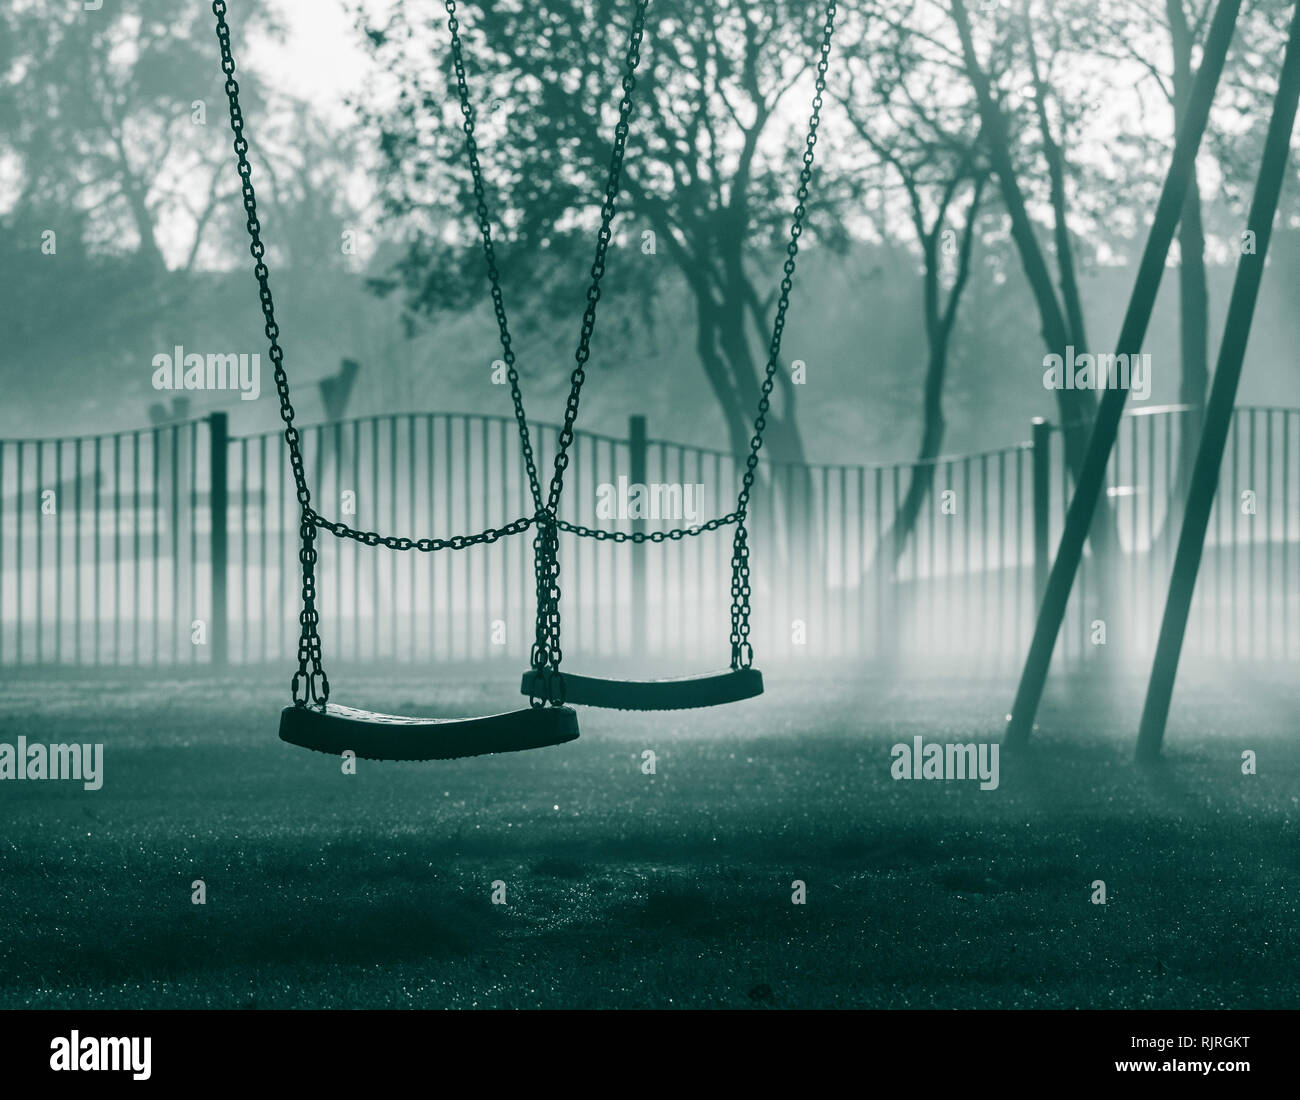 Swings in public park on a misty morning. UK Stock Photo